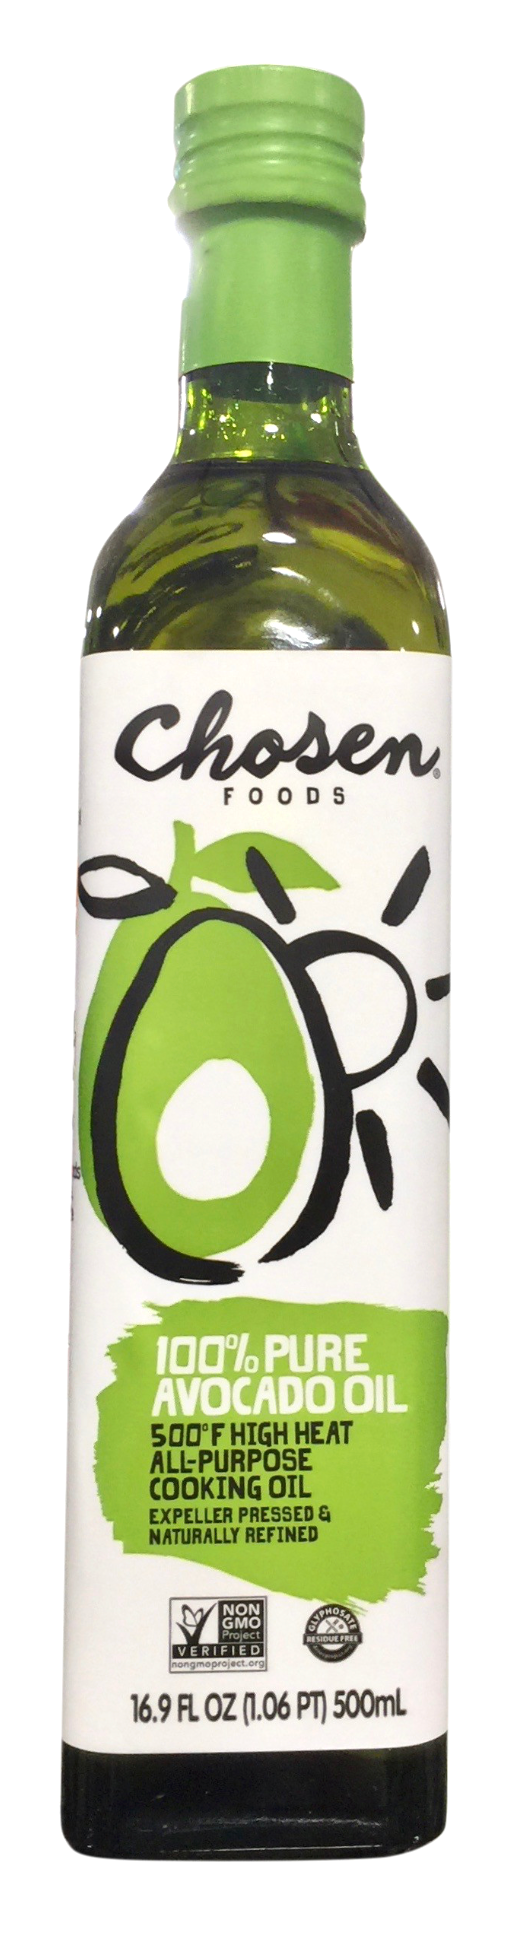 초즌푸드 Chosen Foods Non-GMO 아보카도 오일 500ml *당뇨/케토친화*